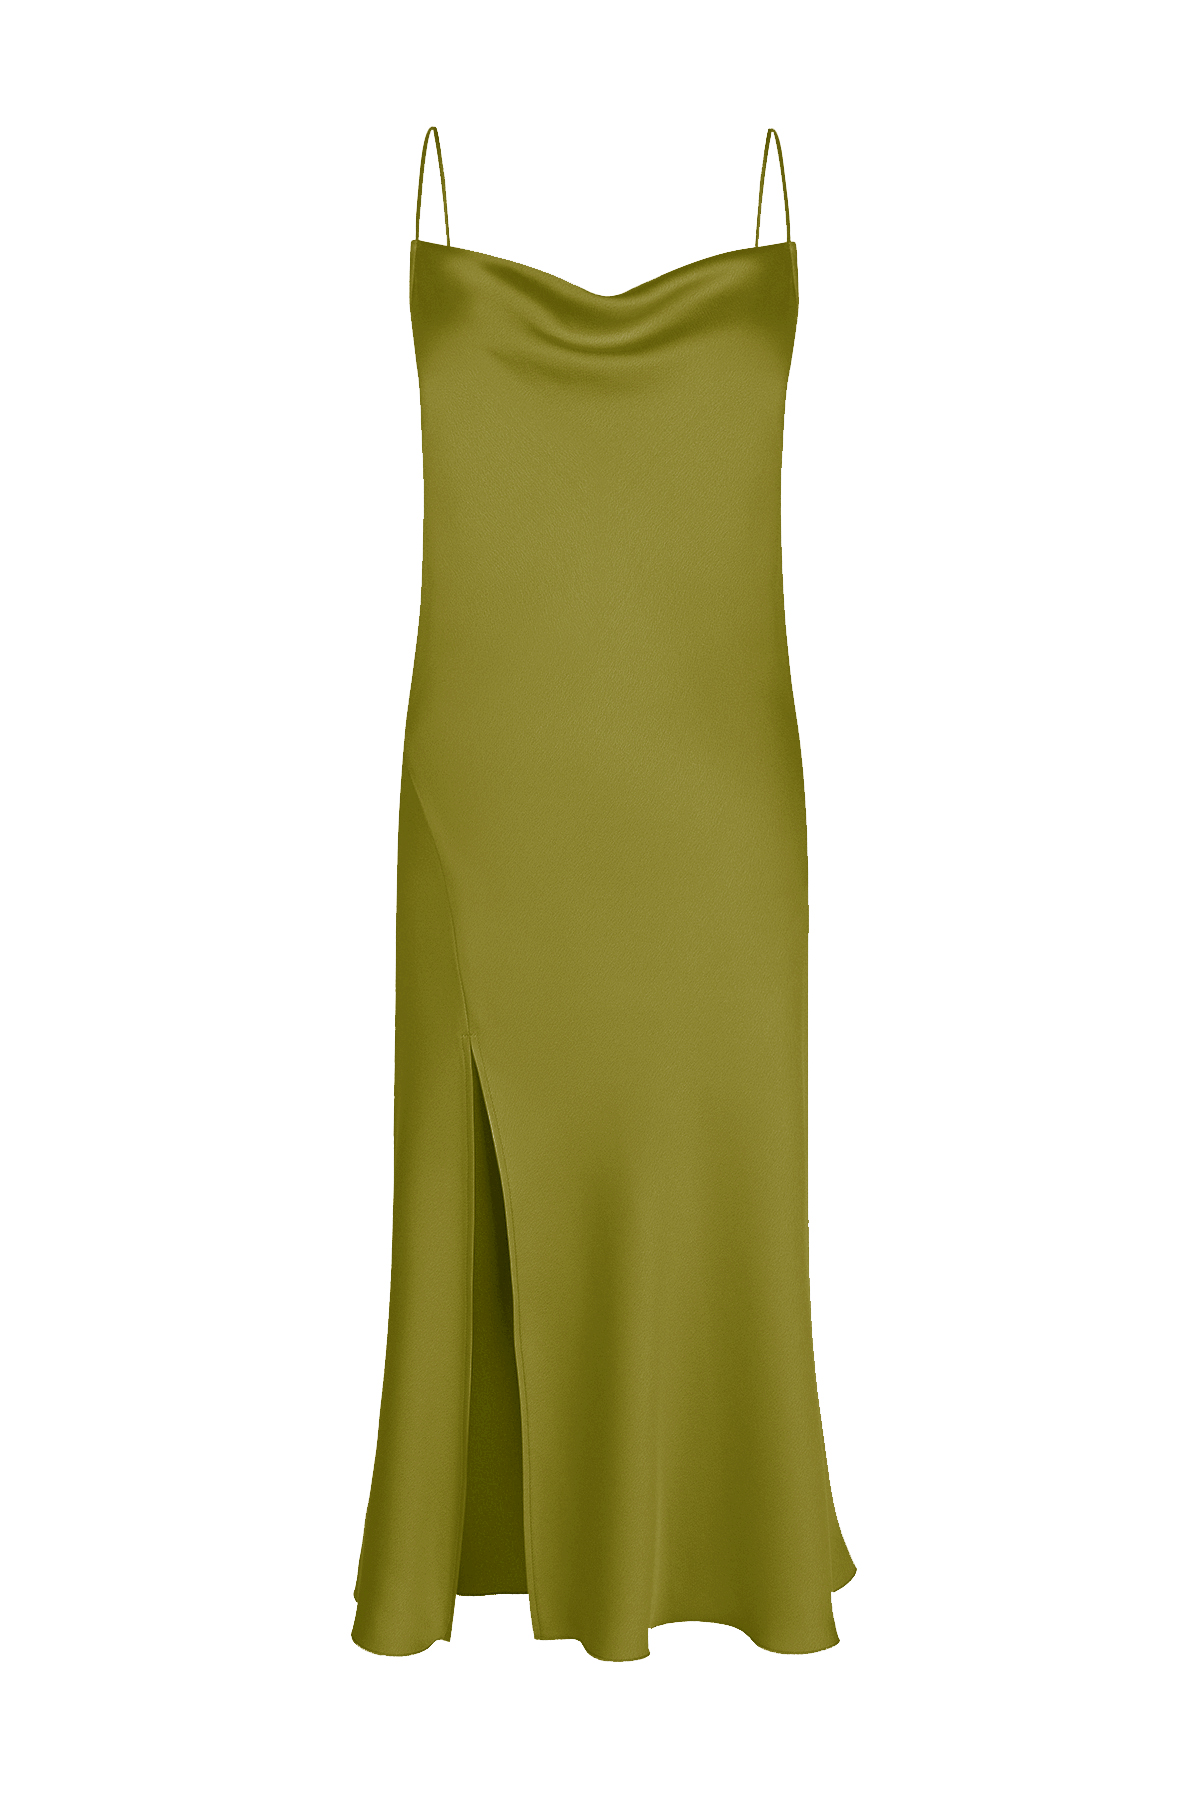 PAMELA Slit Detailed Satin Green Slip Dress